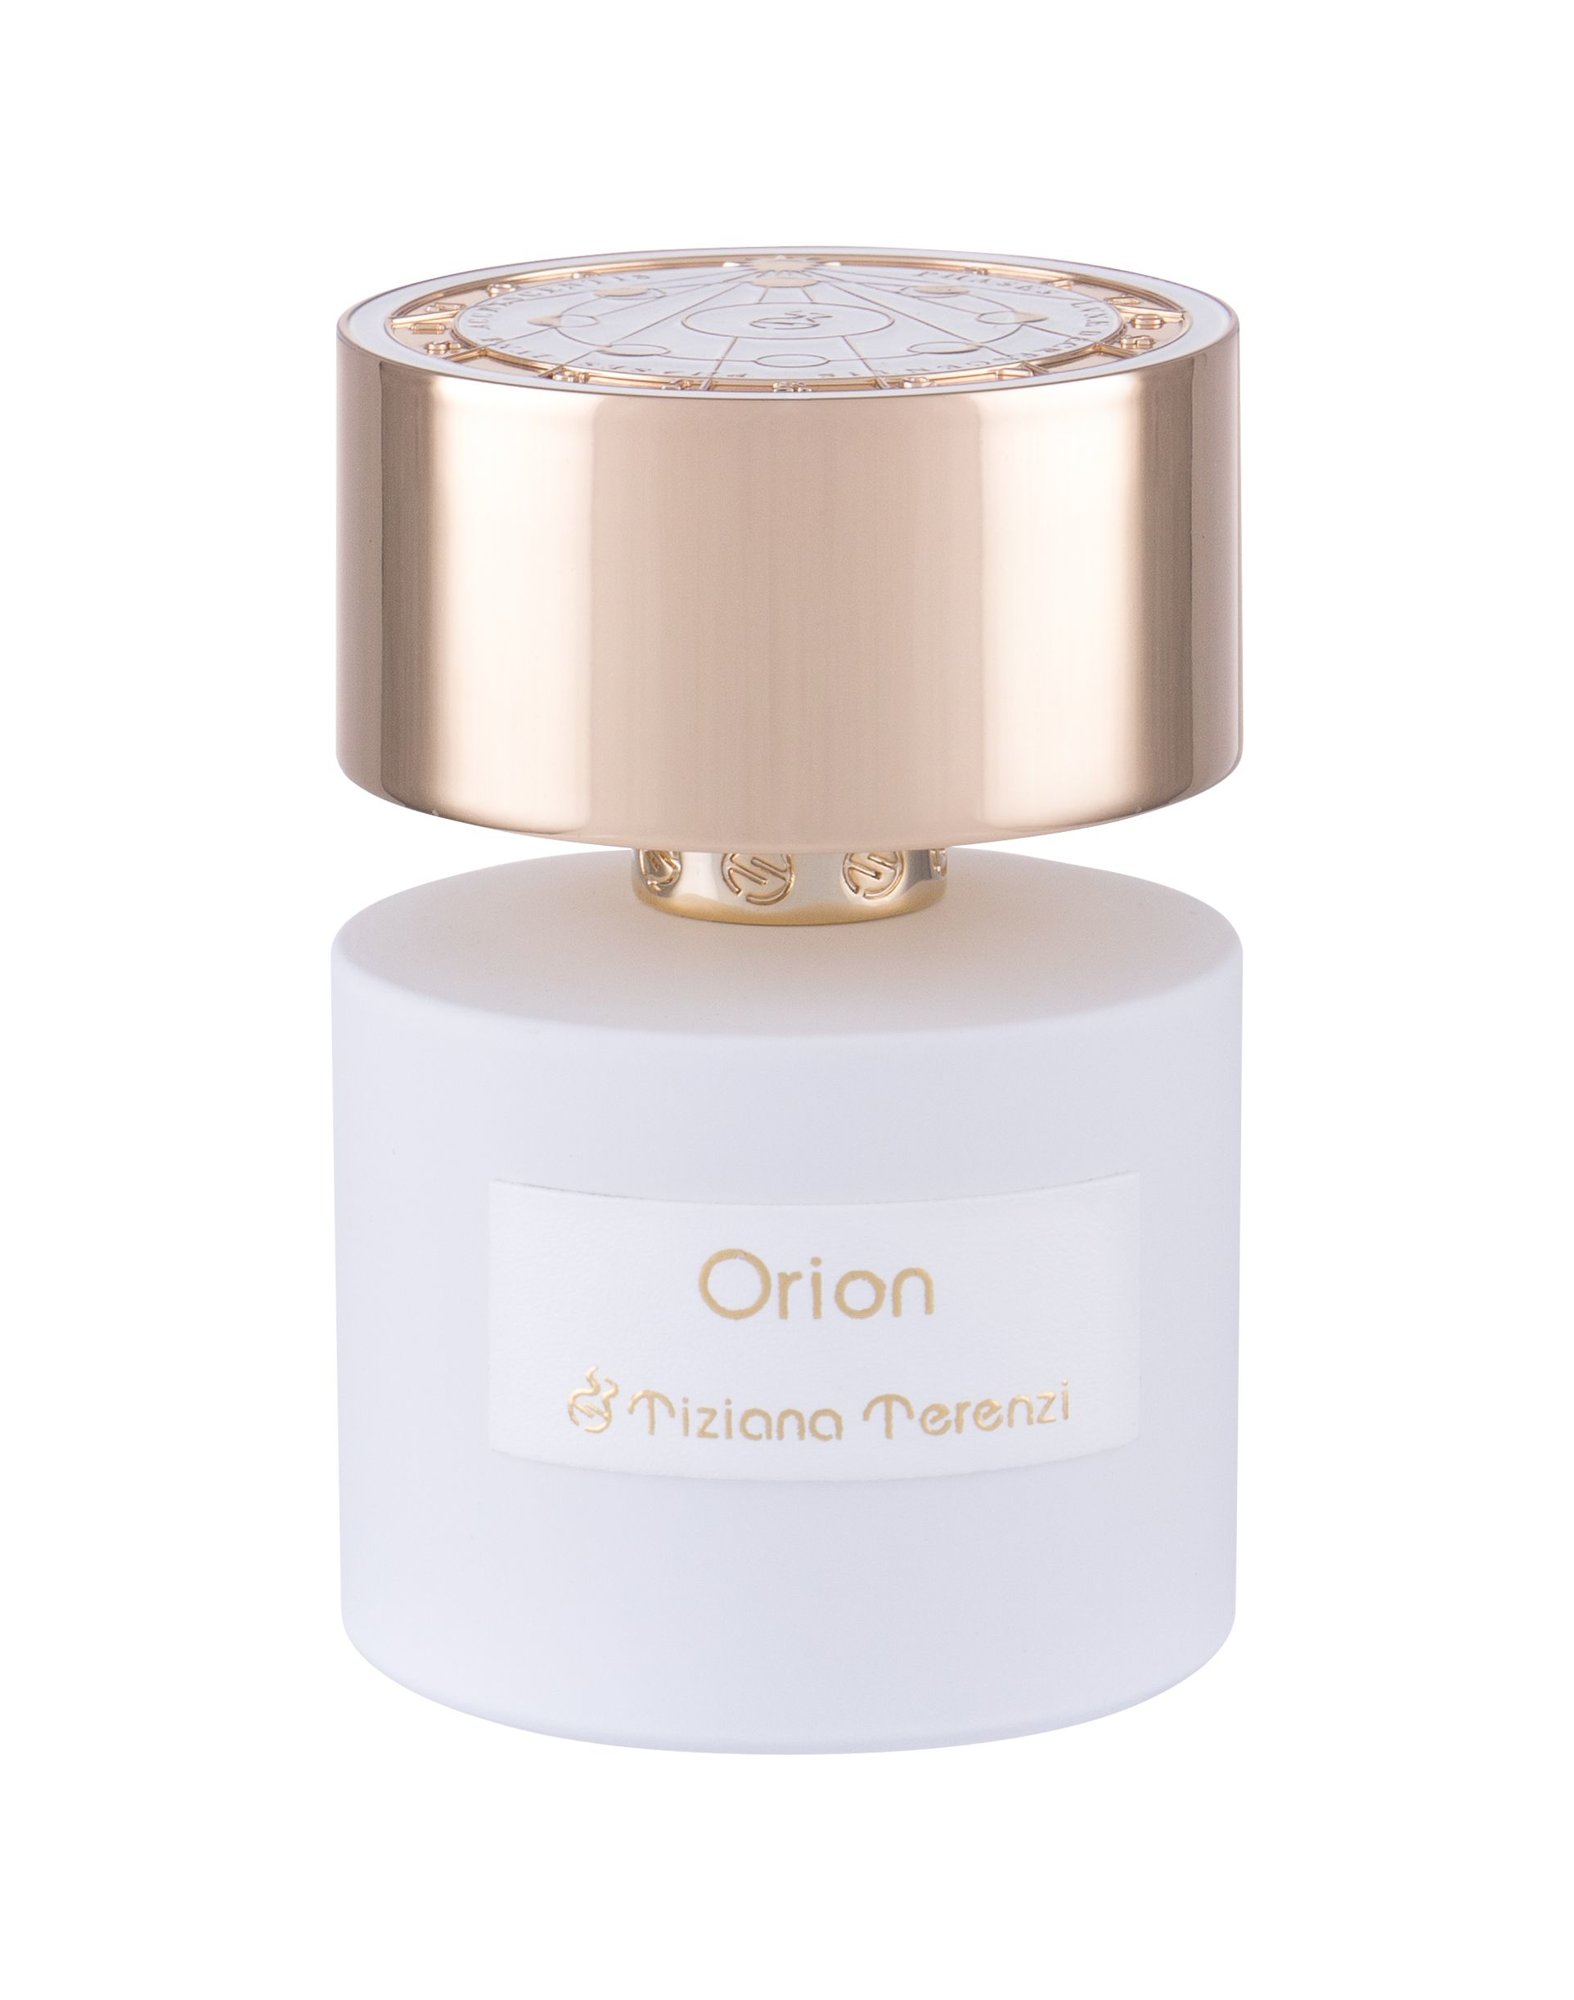 Tiziana Terenzi Orion 5 ml NIŠINIAI kvepalų mėginukas (atomaizeris) Unisex Parfum